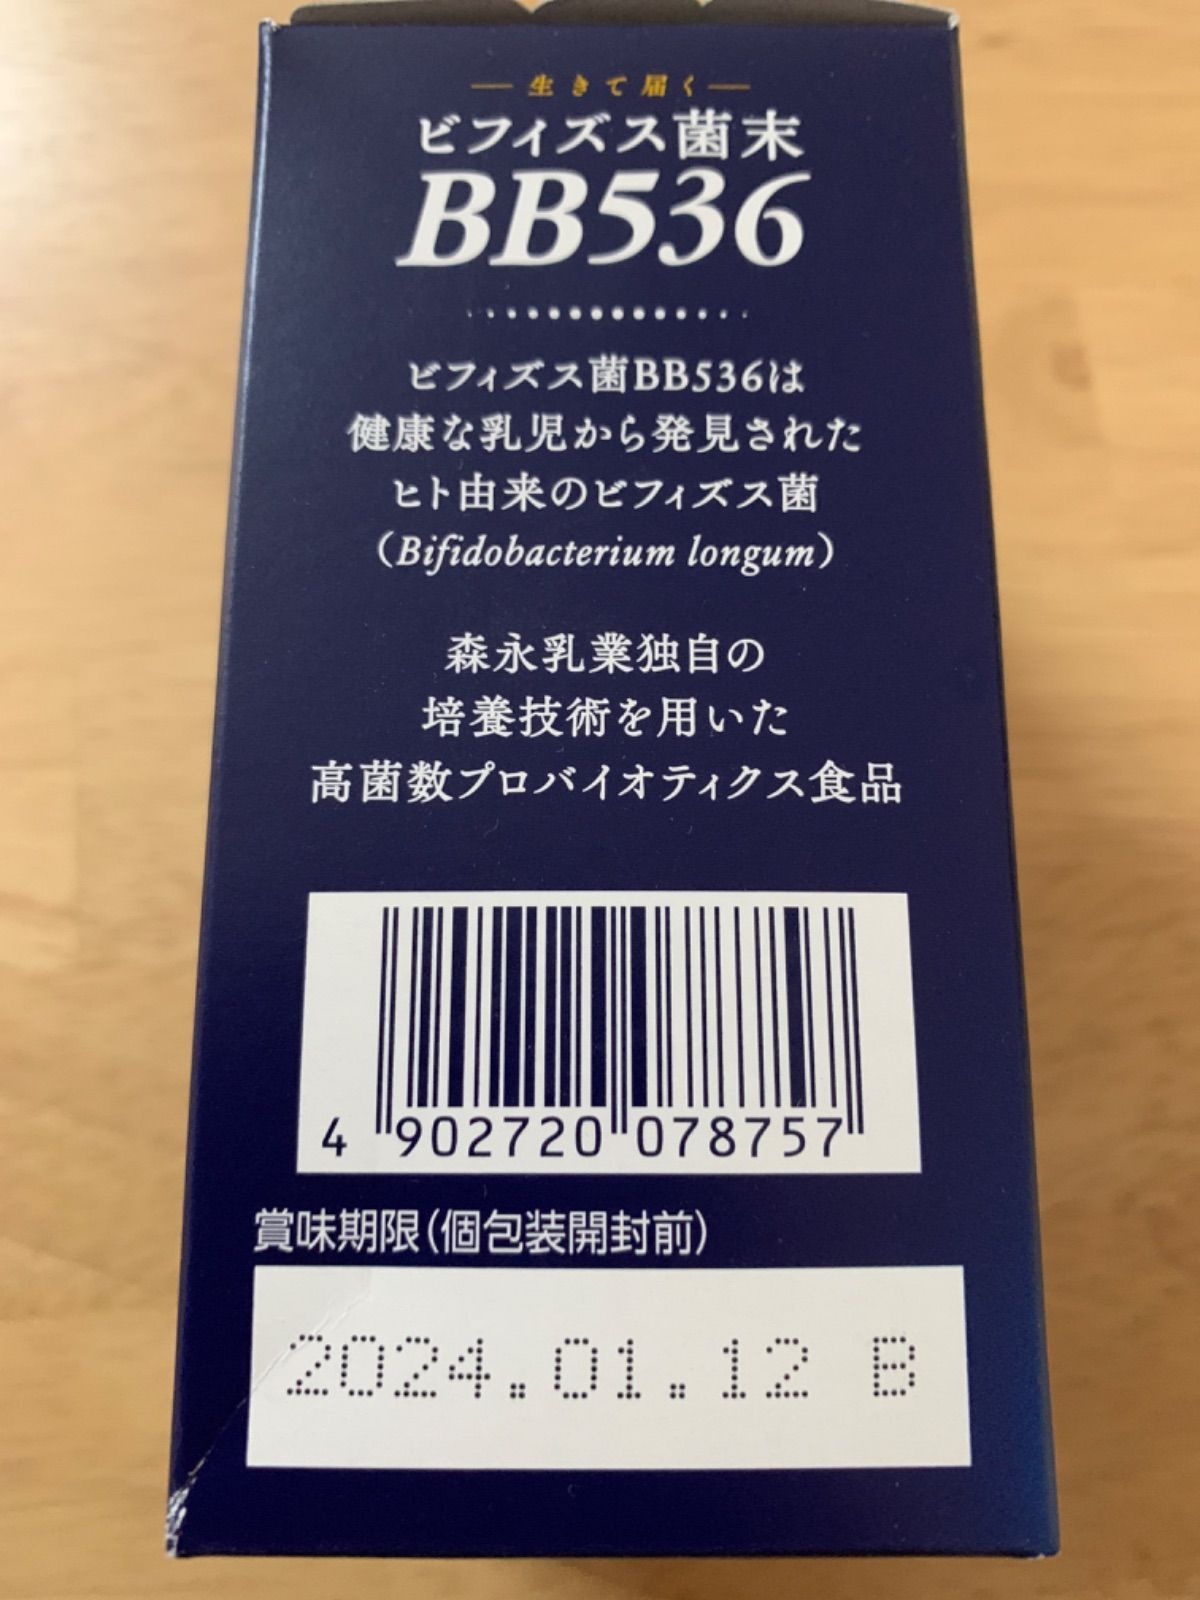 ビフィズス菌BB536 30本入り ラスト1箱 - そうゆう - メルカリ